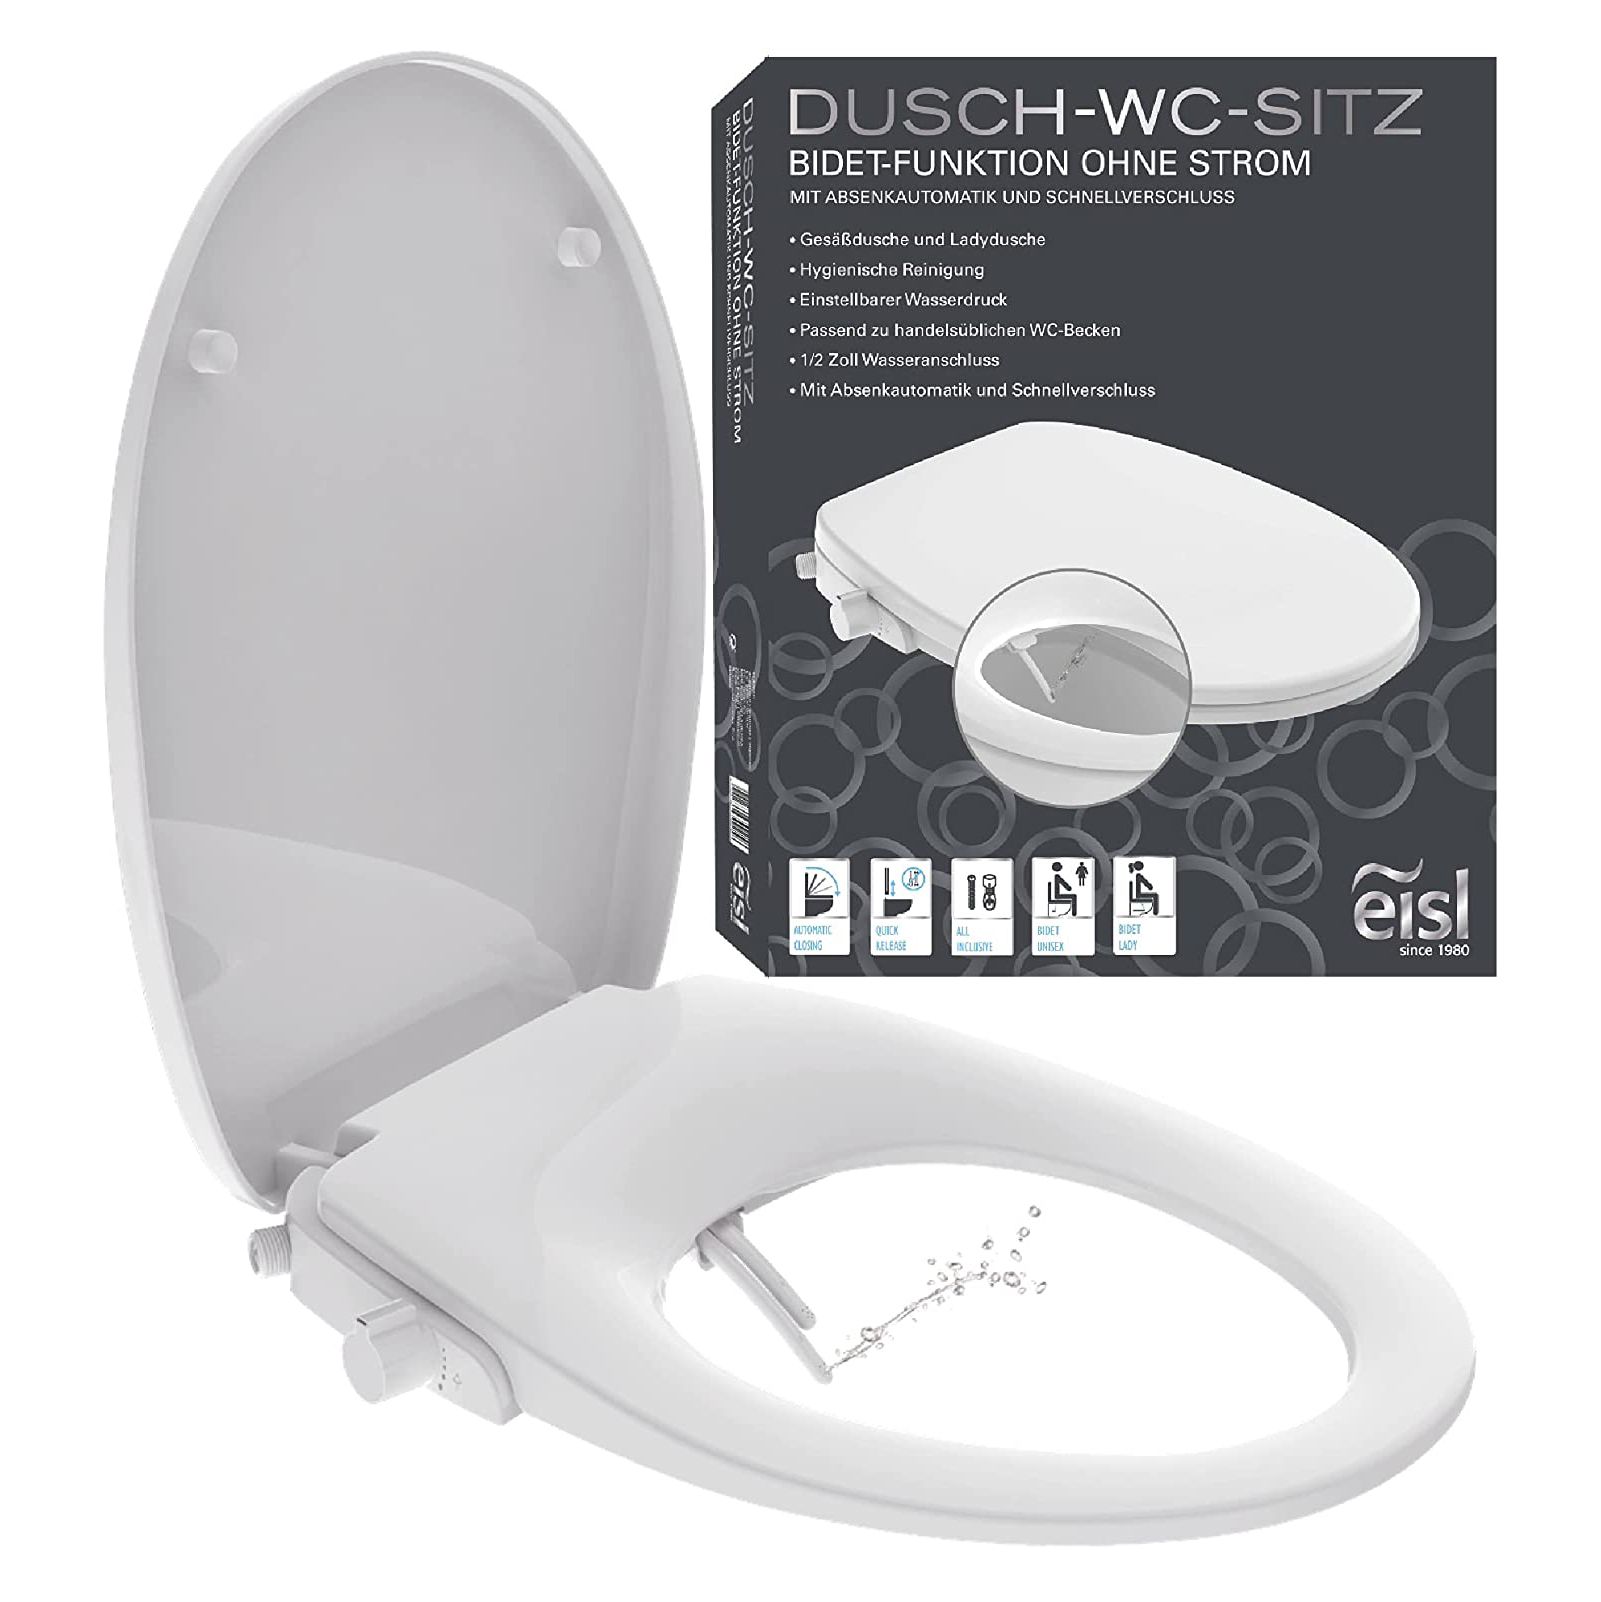 Dusch WC für Intimpflege Taharet Deluxe Bidet Aufsatz Toilettensitz Elektrisch